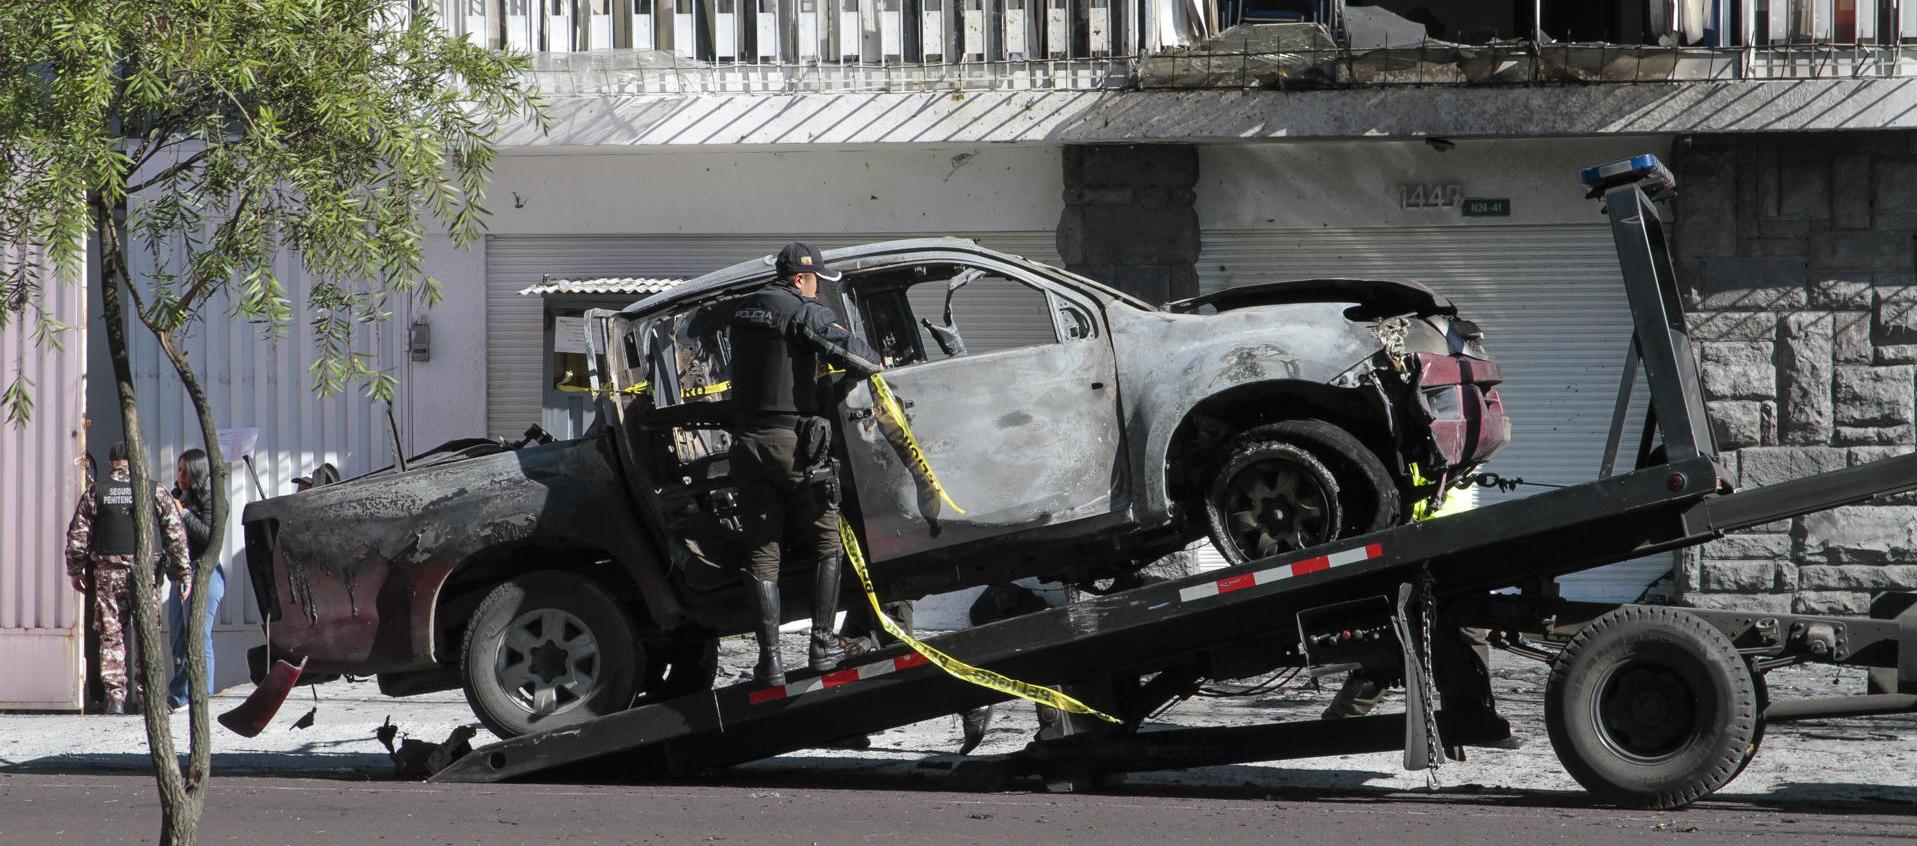 Este es el carro bomba que explotó en la madrugada de hoy jueves en las afueras  del edificio del Servicio Nacional de Atención Integral a Personas Privadas de Libertad, en Quito.